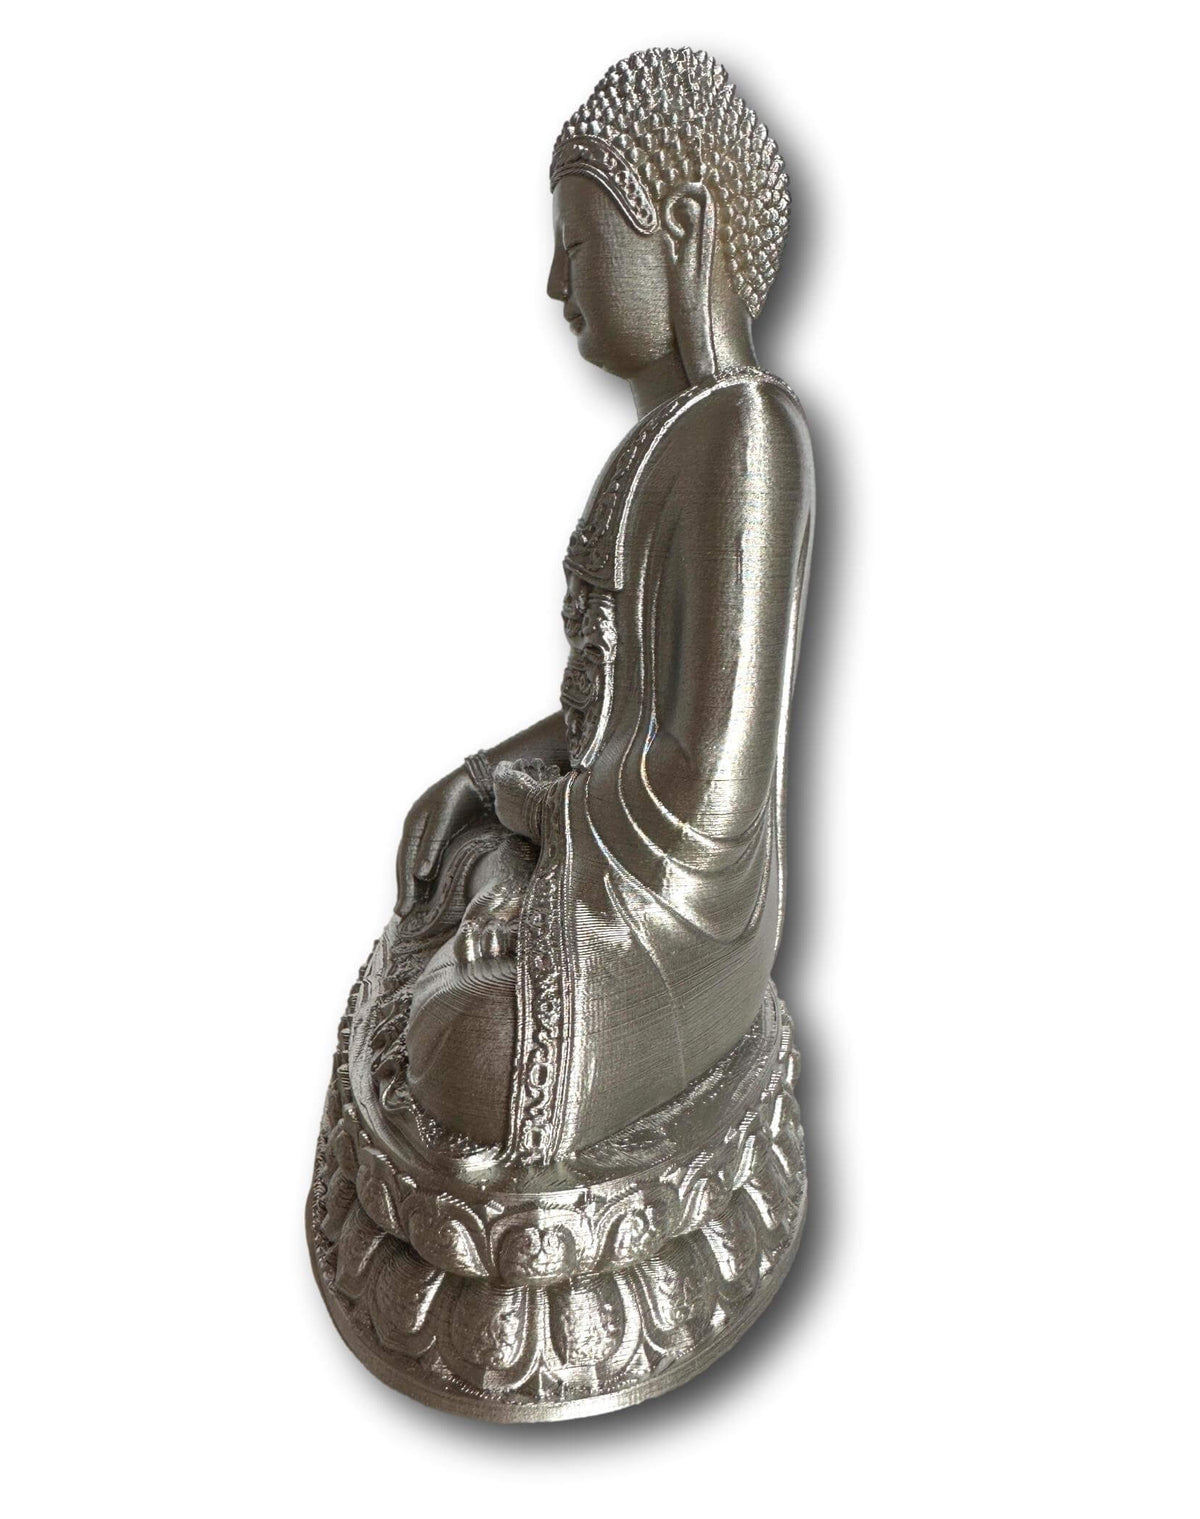 Silver Buddha Statue - Made In Australia 🇦🇺 🦘 Eco-friendly 🌱